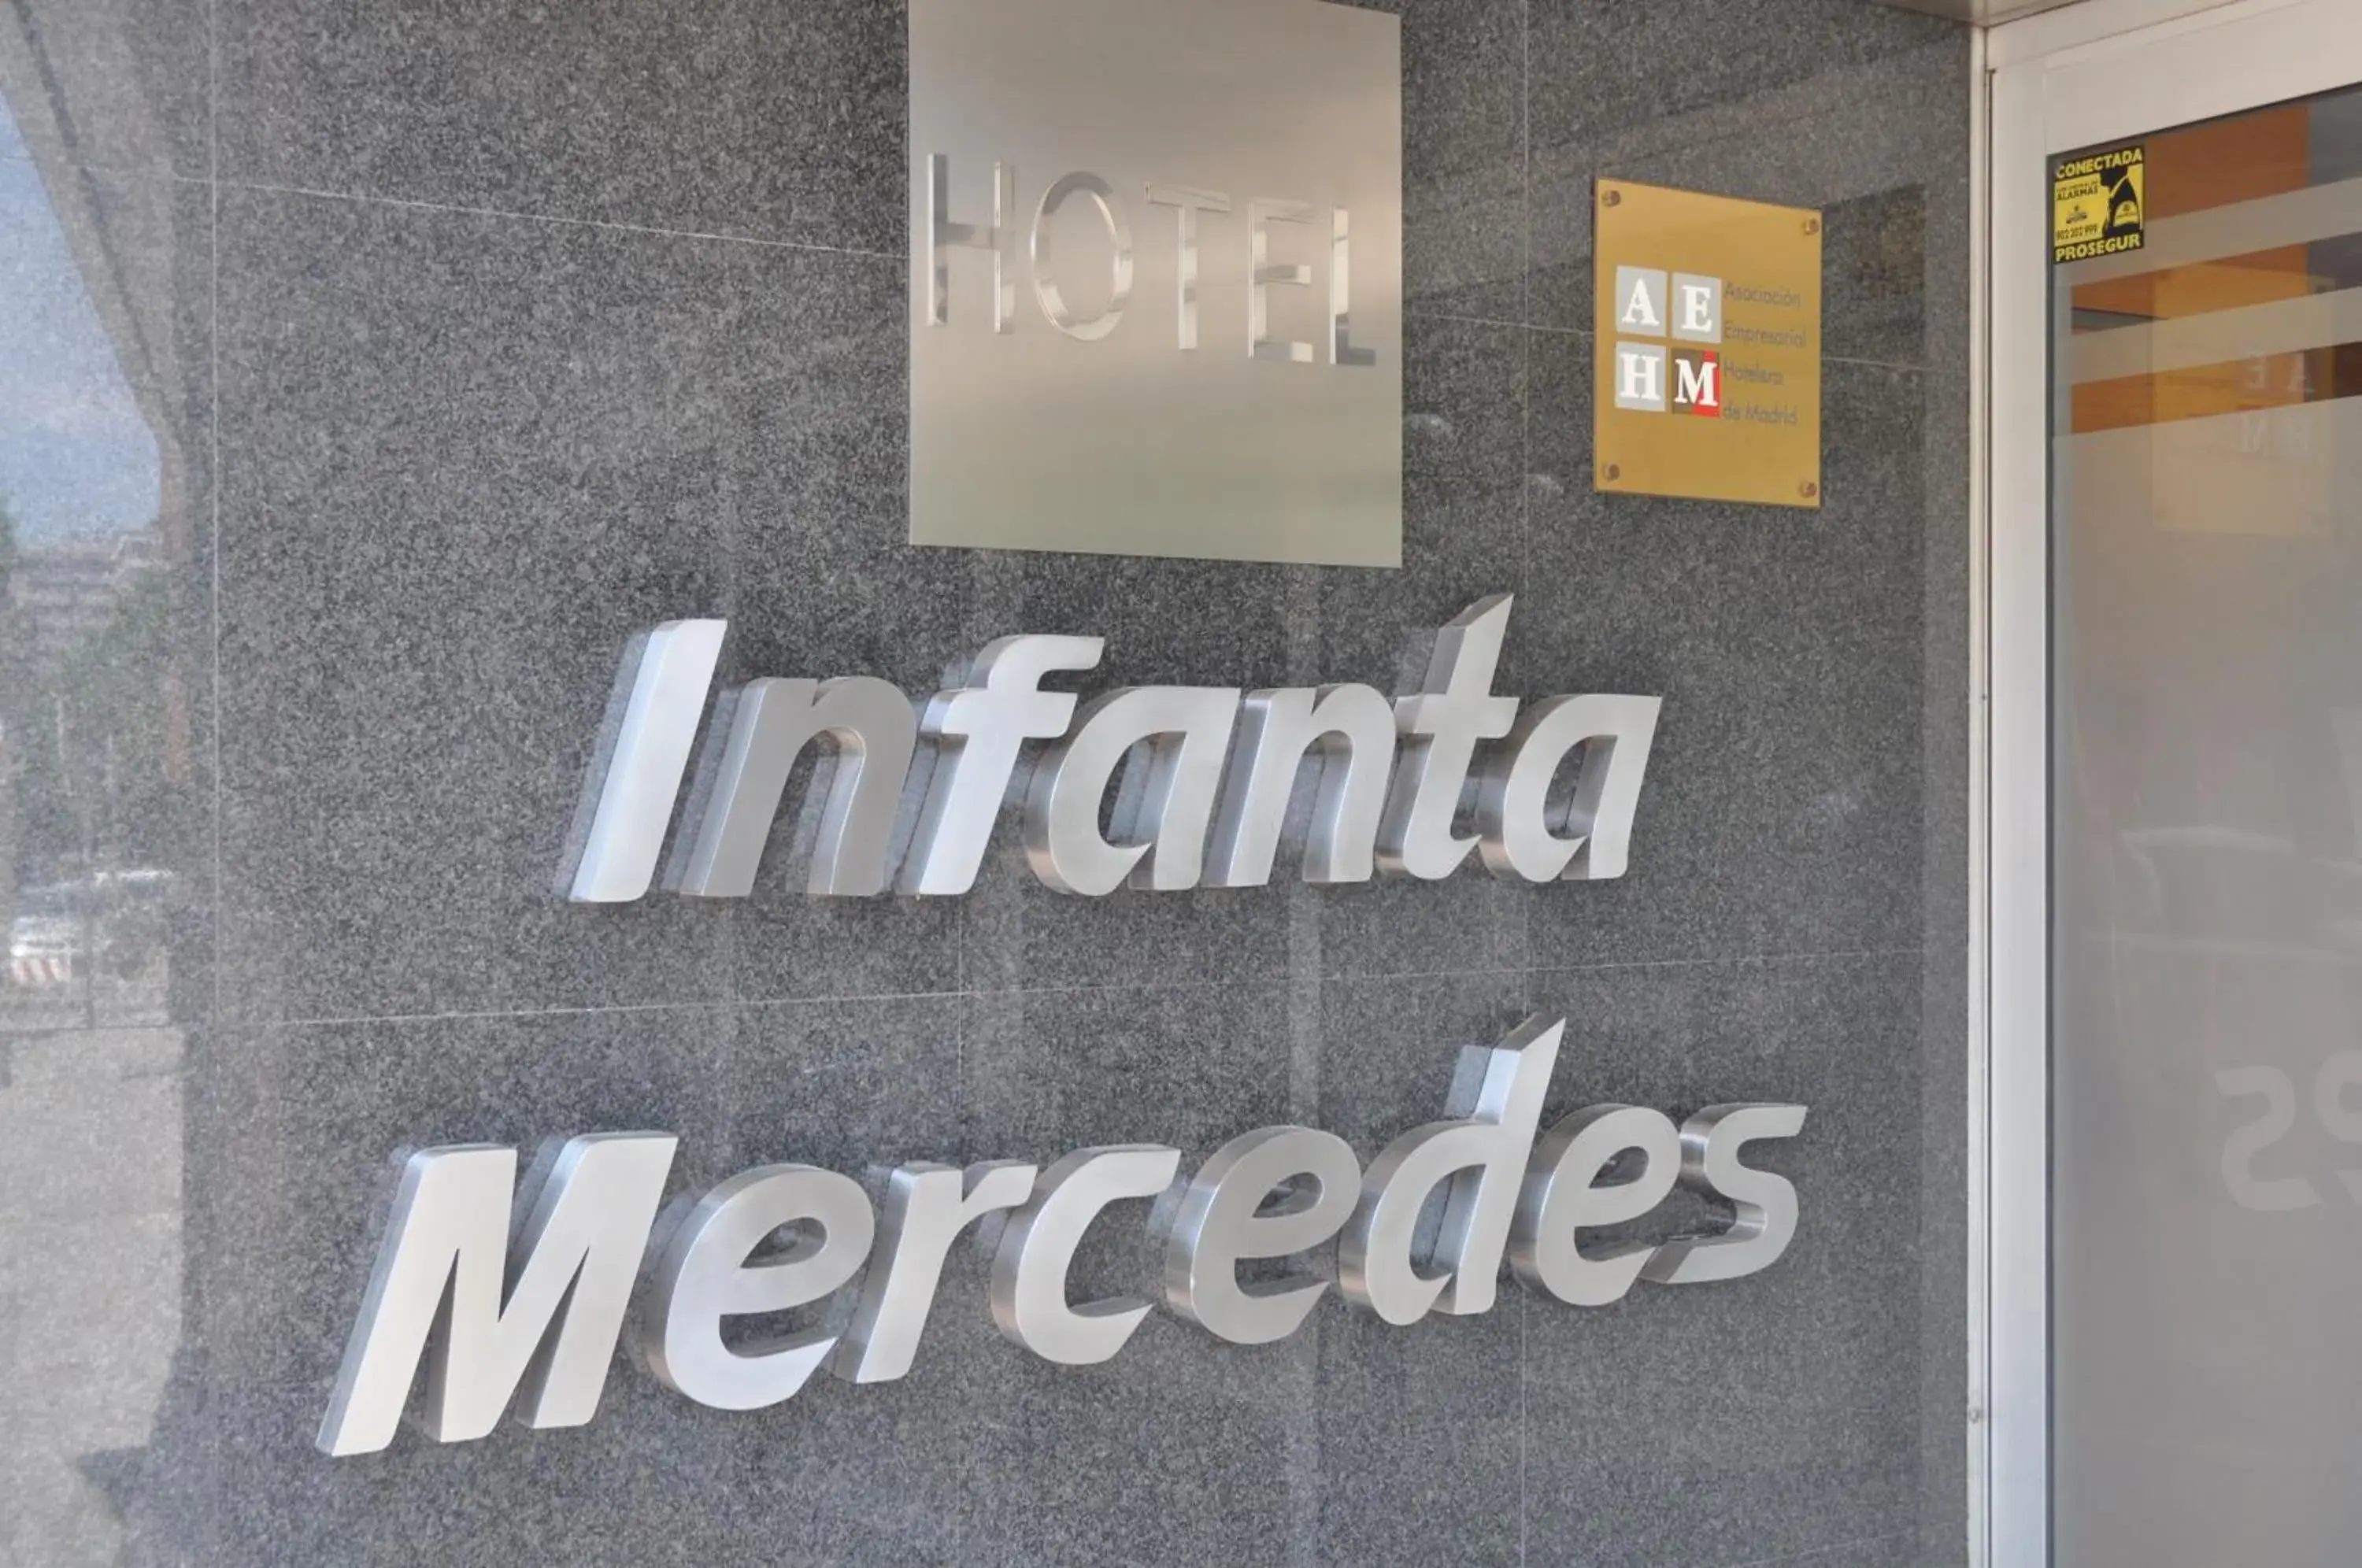 Property logo or sign in Infanta Mercedes